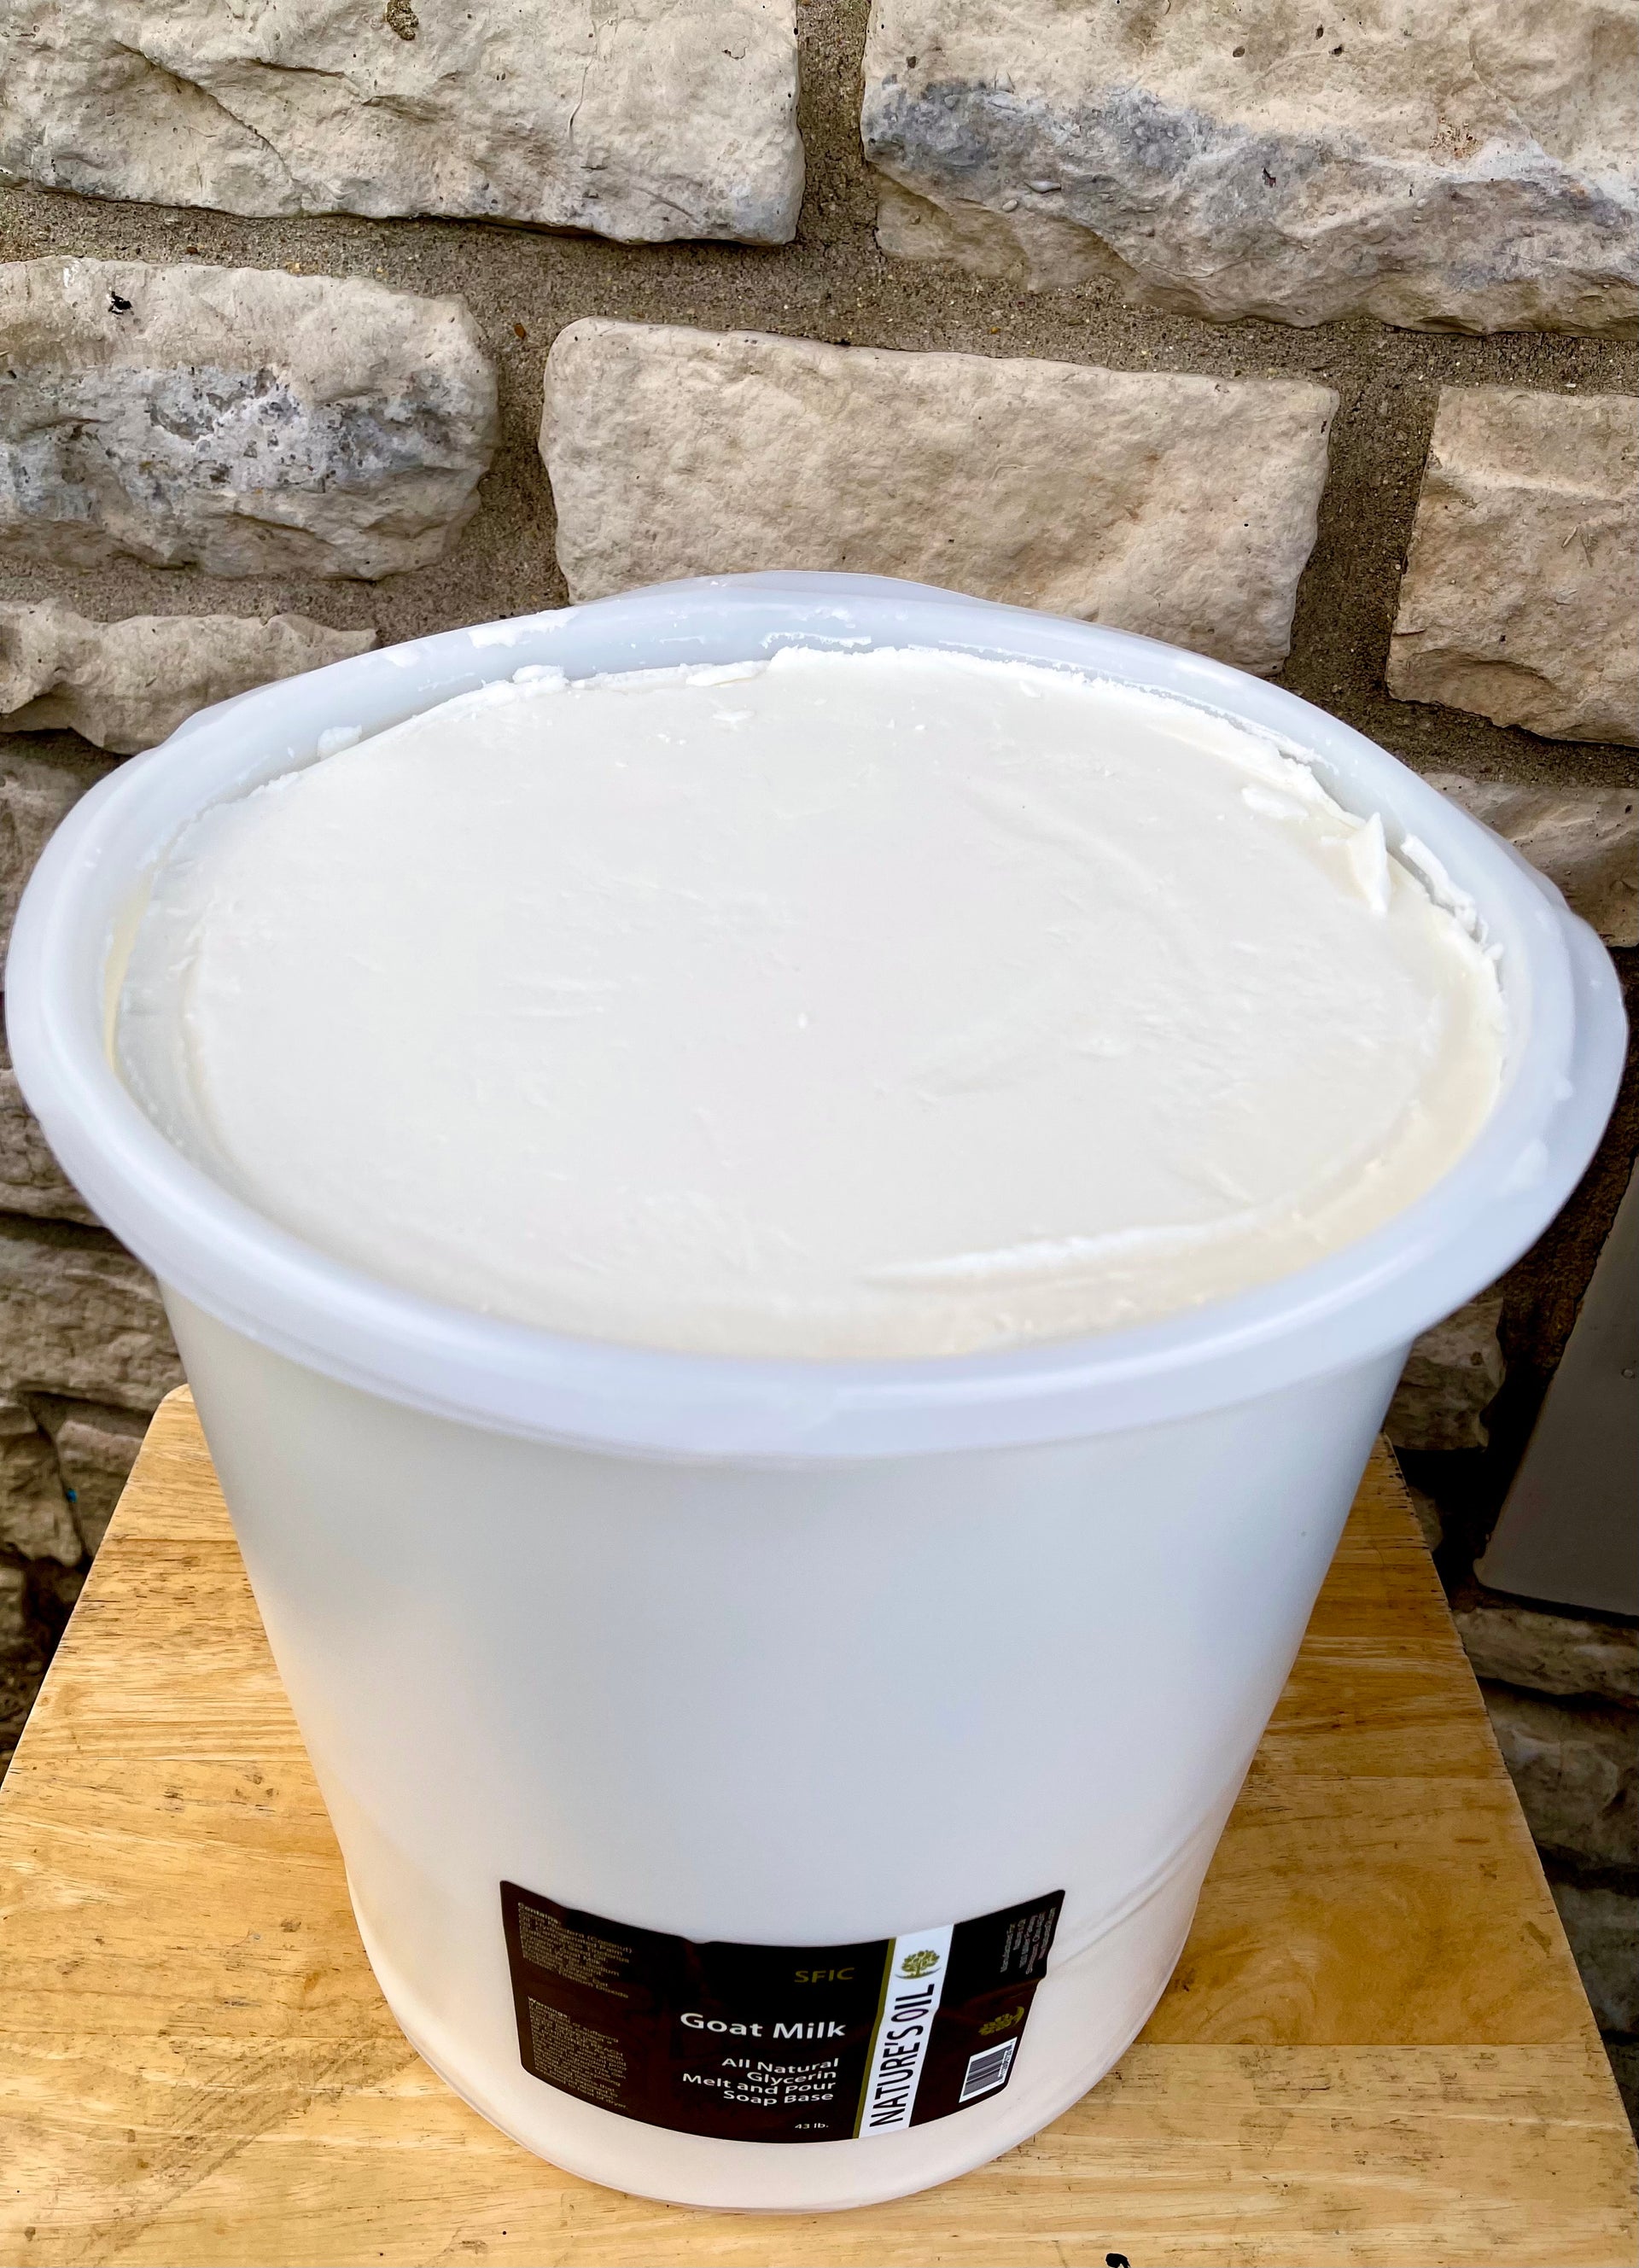 SFIC Goat's Milk Melt and Pour Soap Base